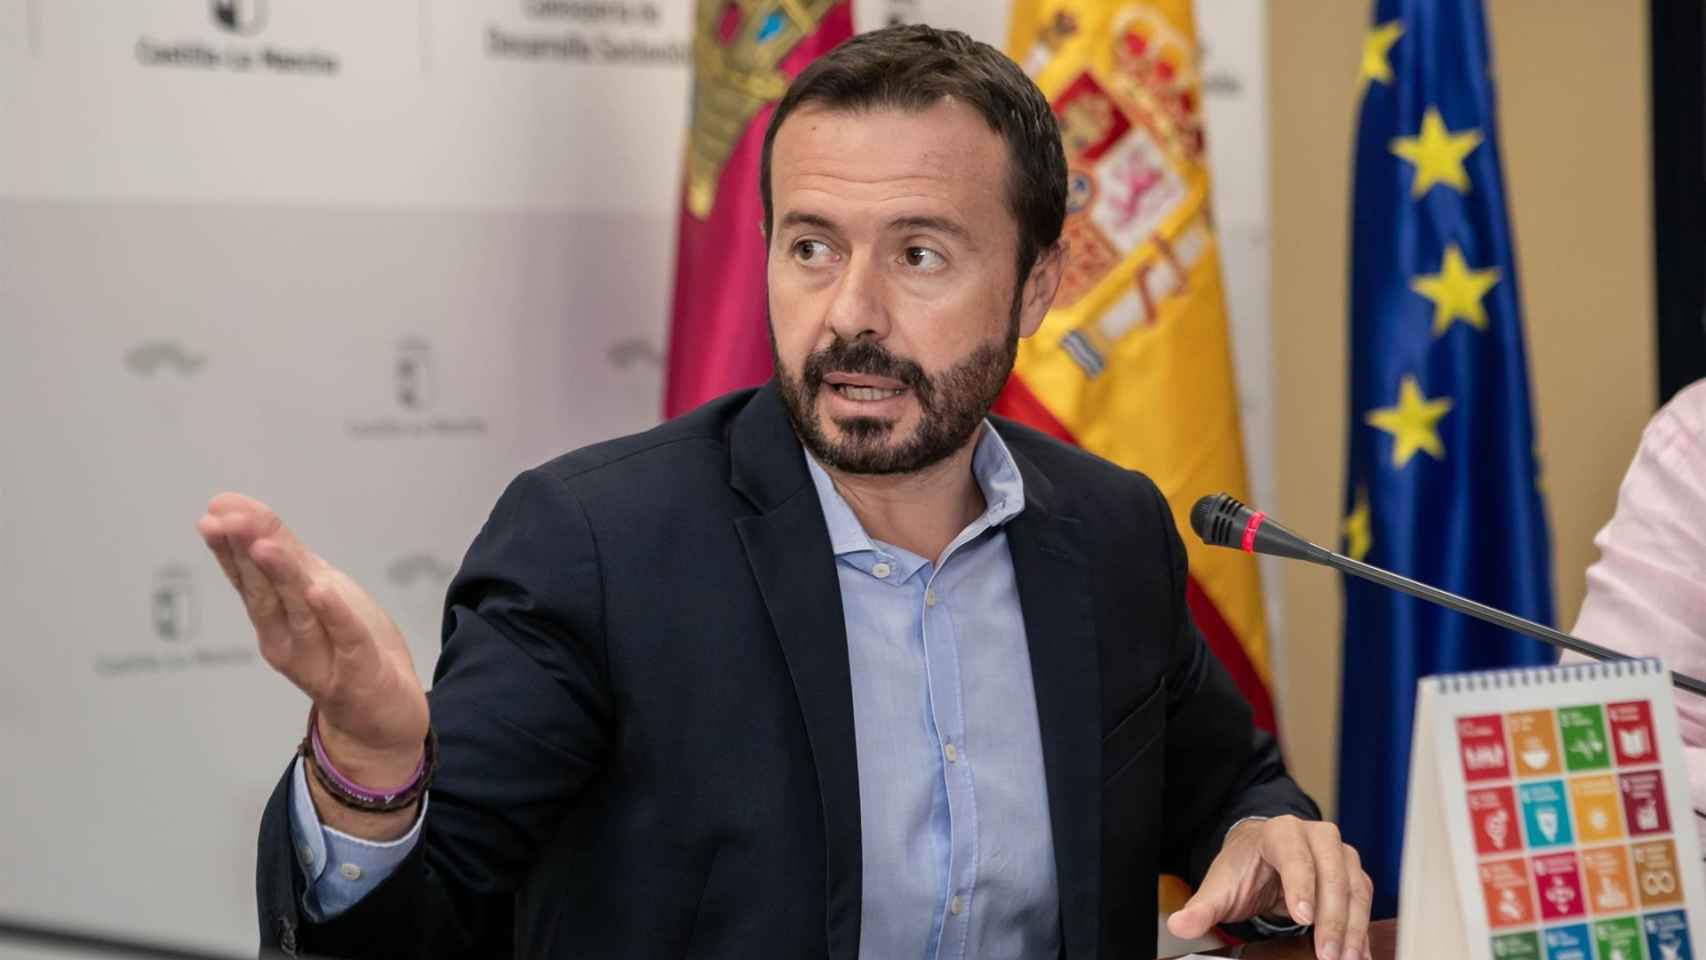 José Luis Escudero, consejero de Desarrollo Sostenible de Castilla-La Mancha